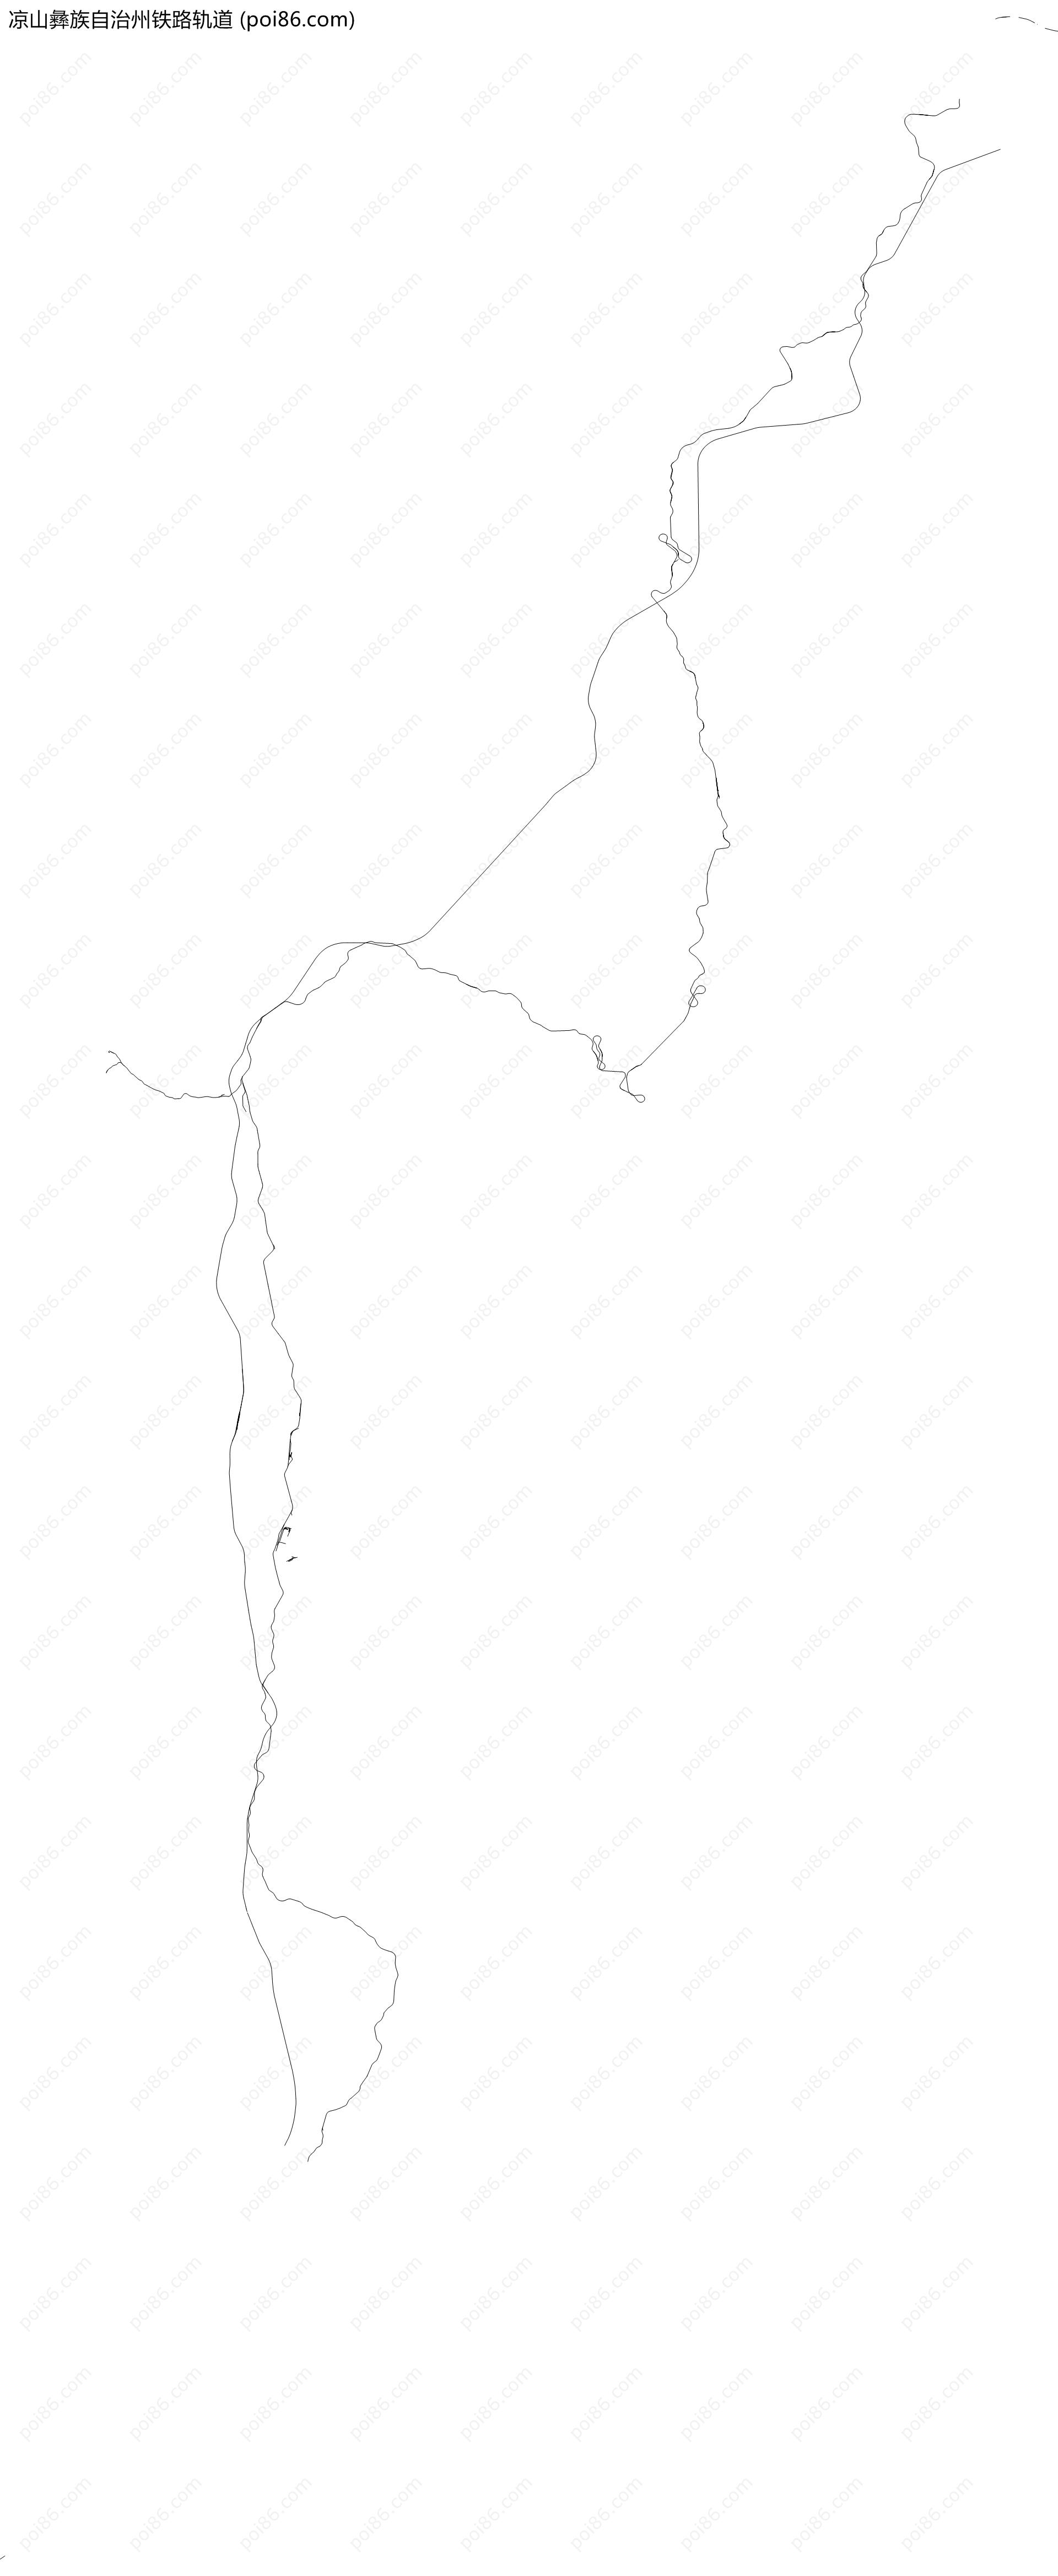 凉山彝族自治州铁路轨道地图